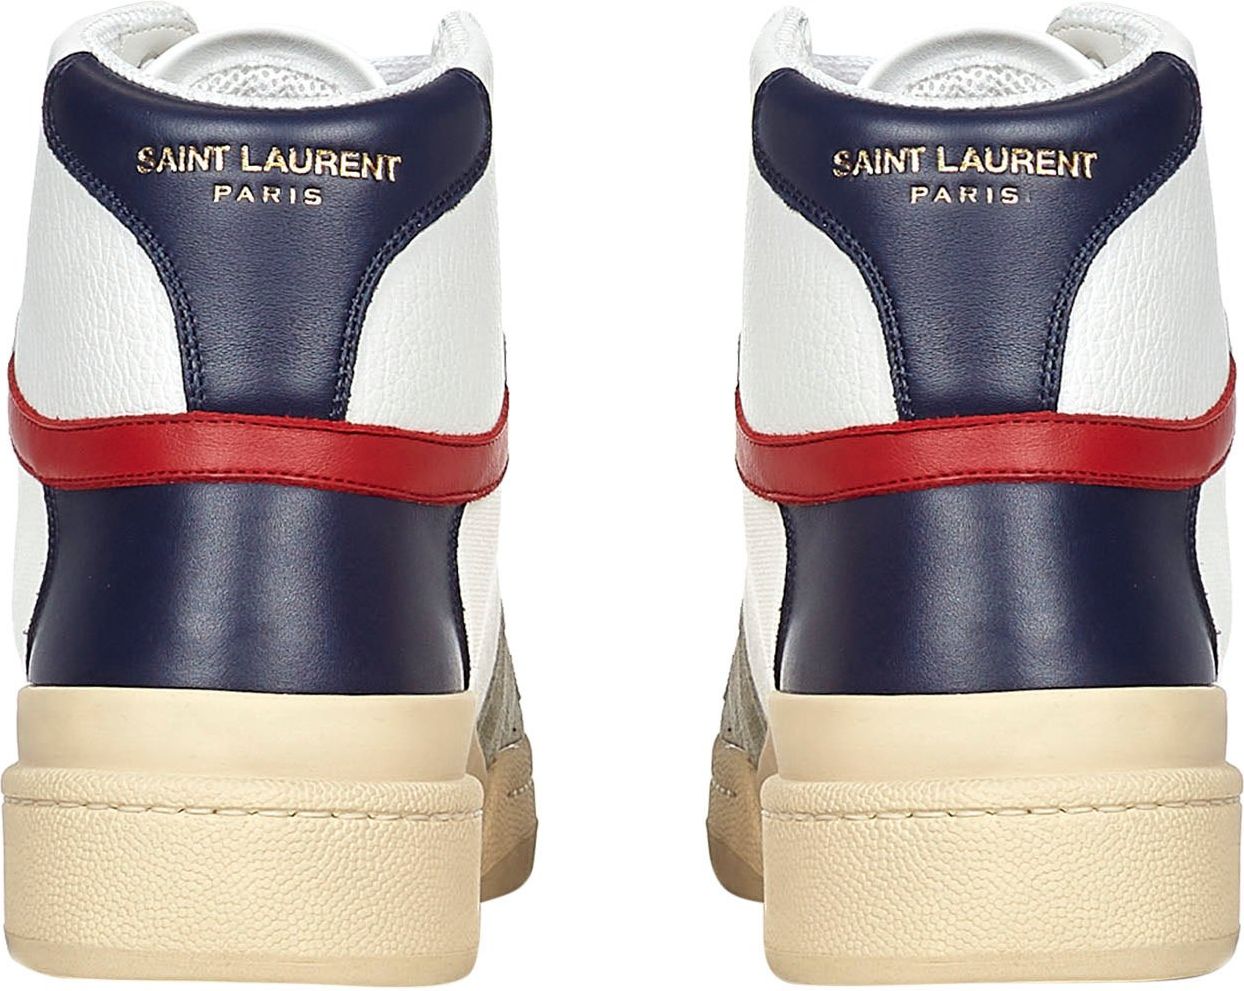 Saint Laurent Saint Laurent Sneakers White Wit